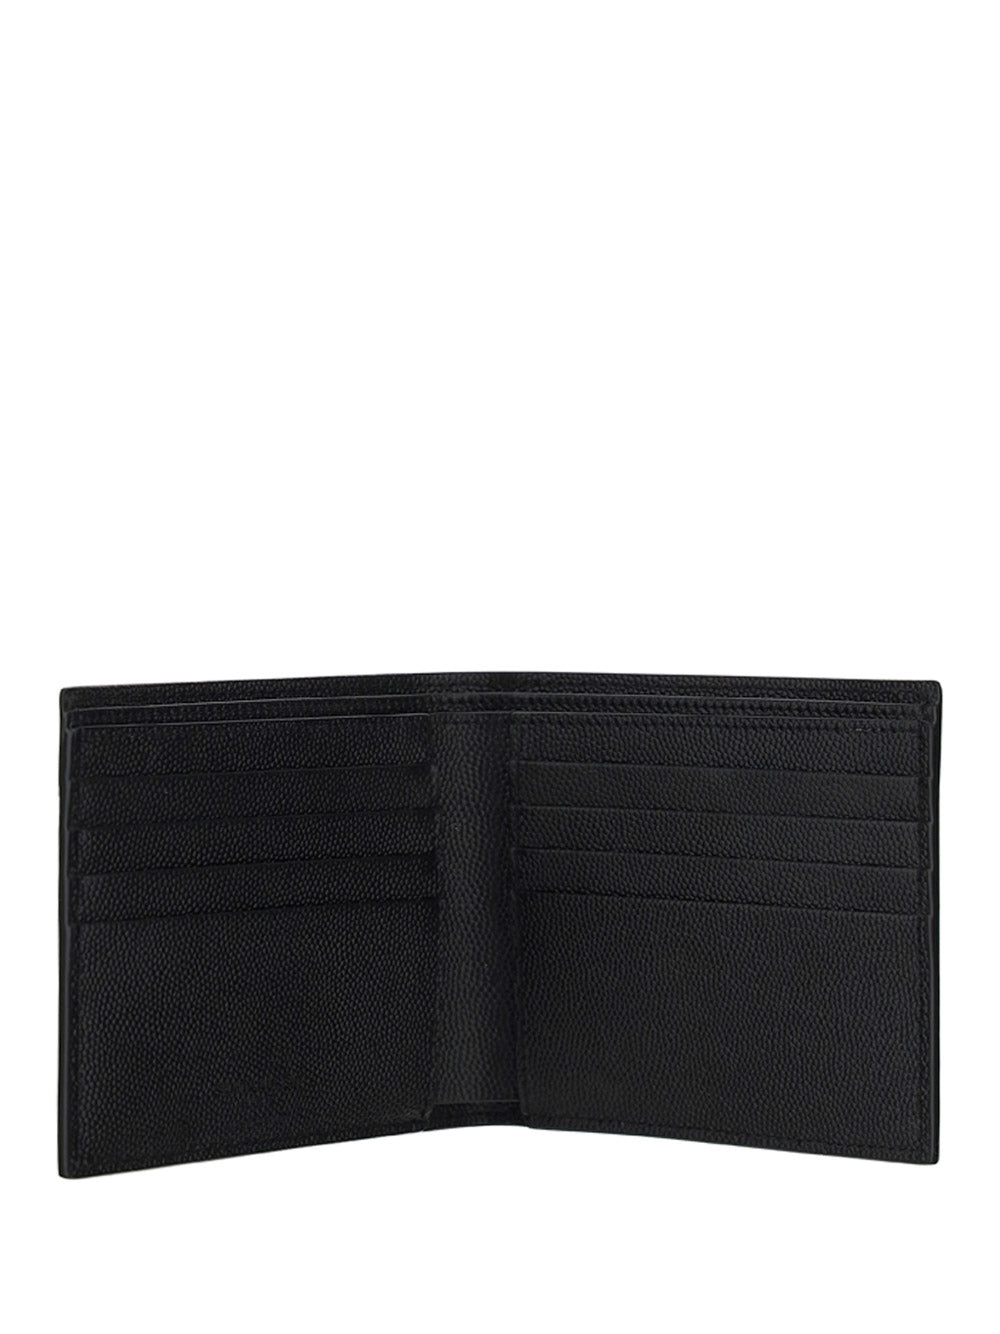 East/West Wallet in Grain De Poudre Embossed Leather - Black